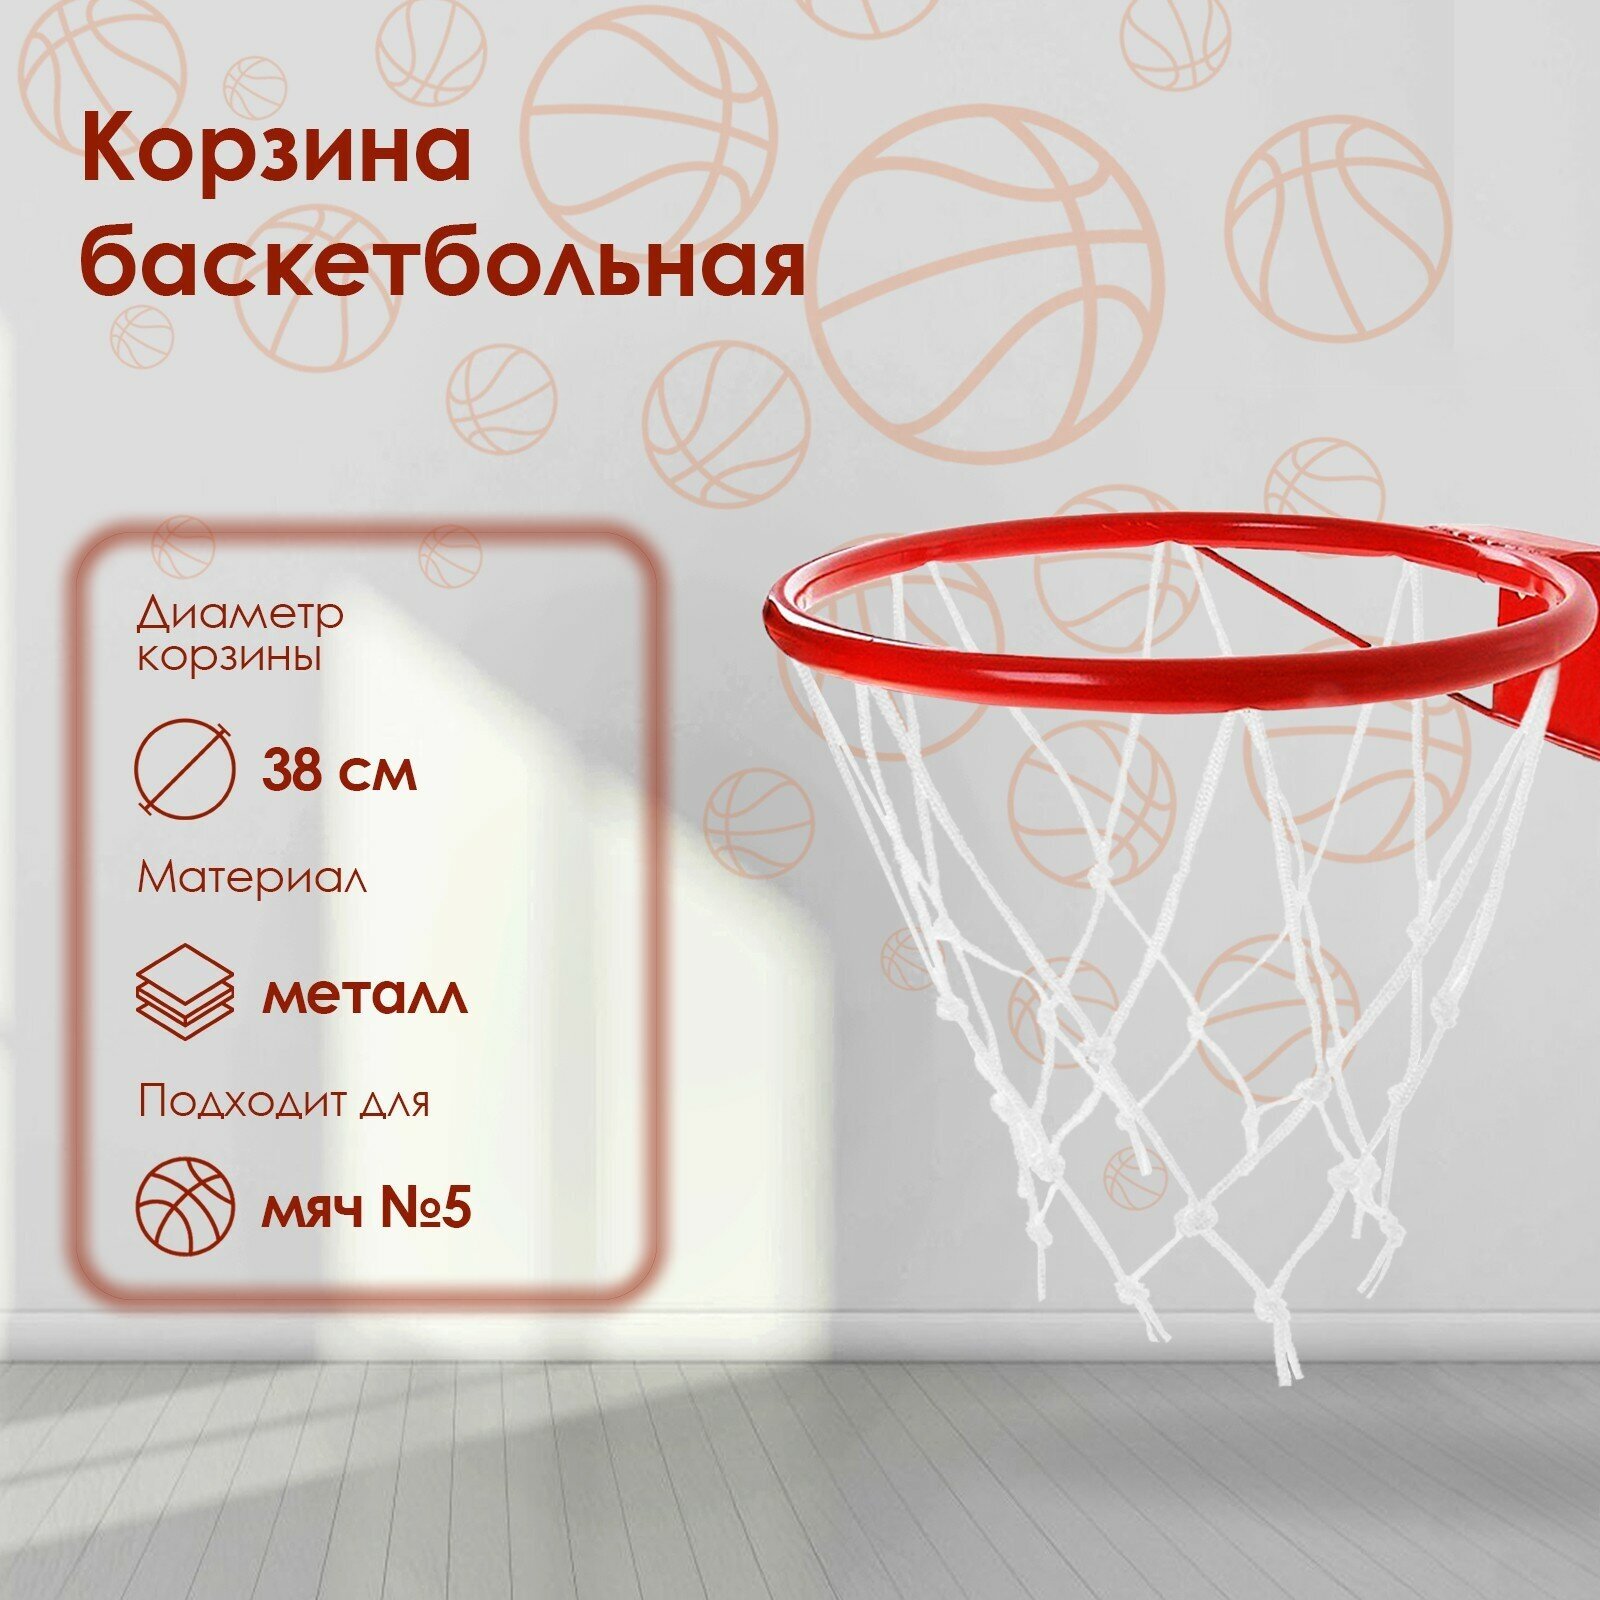 Корзина баскетбольная №5, диаметр 380 мм, с упором и сеткой